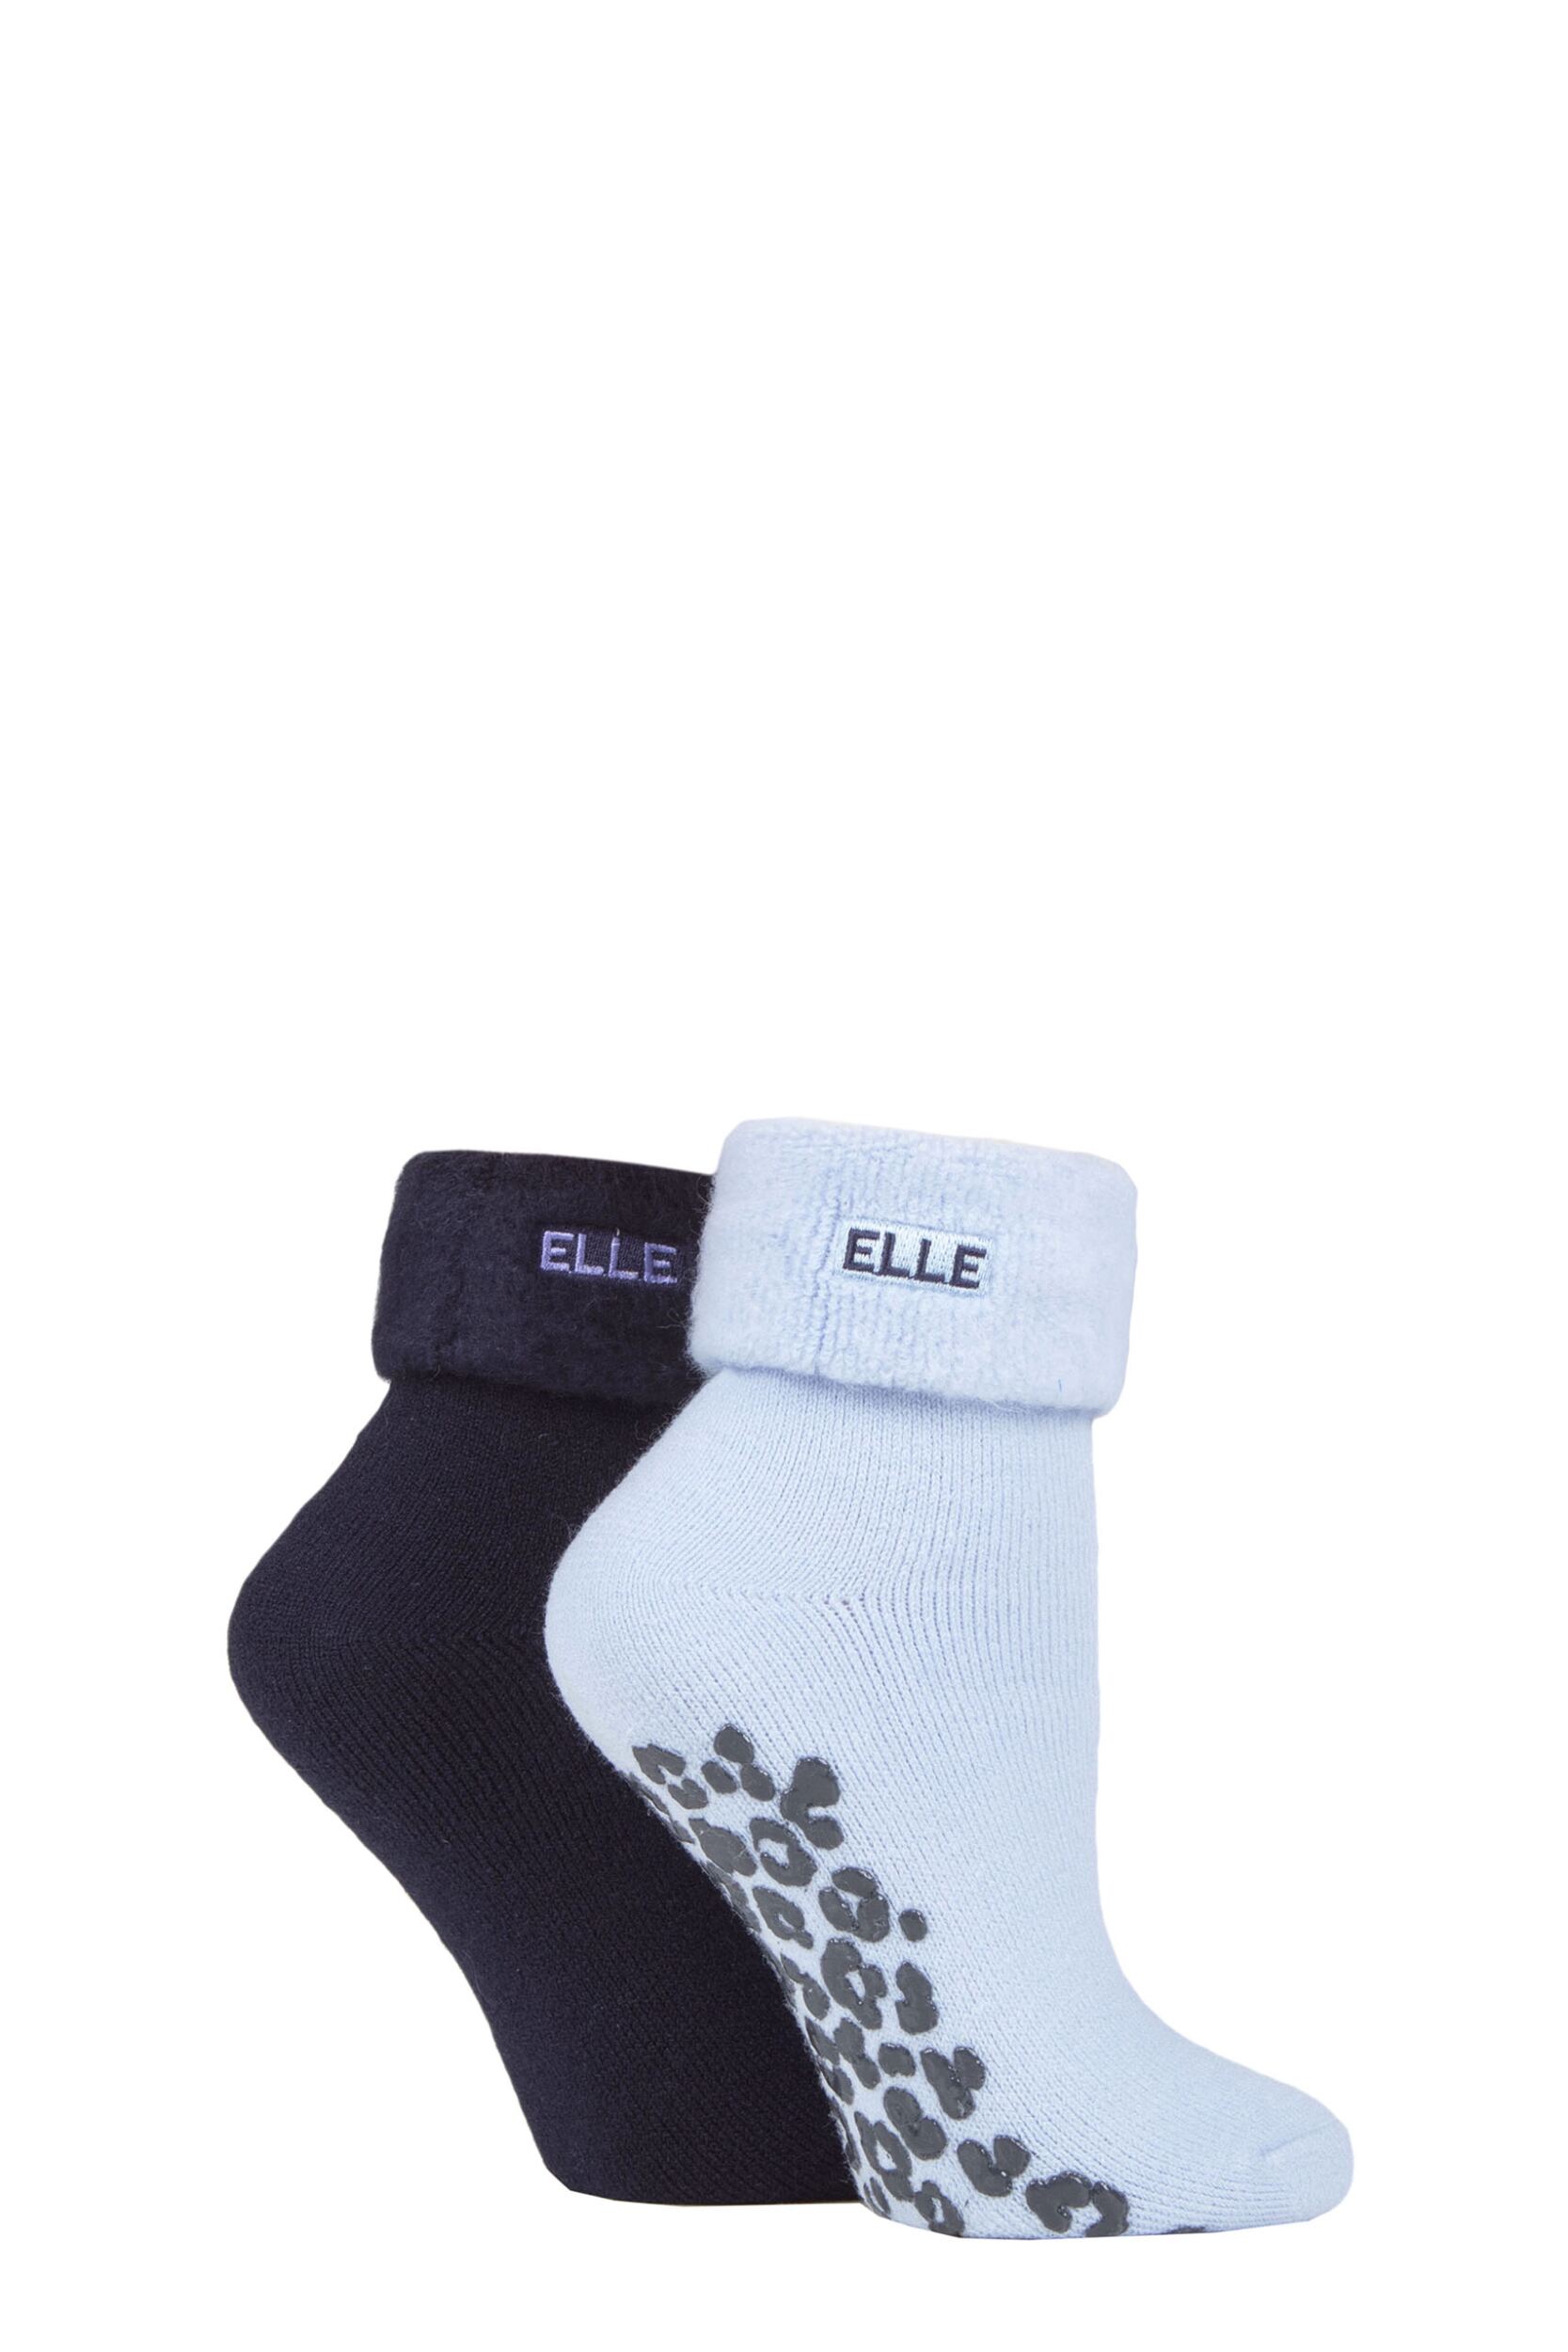 Ladies 2 Pair Elle Thermal Bed and Slipper Socks 